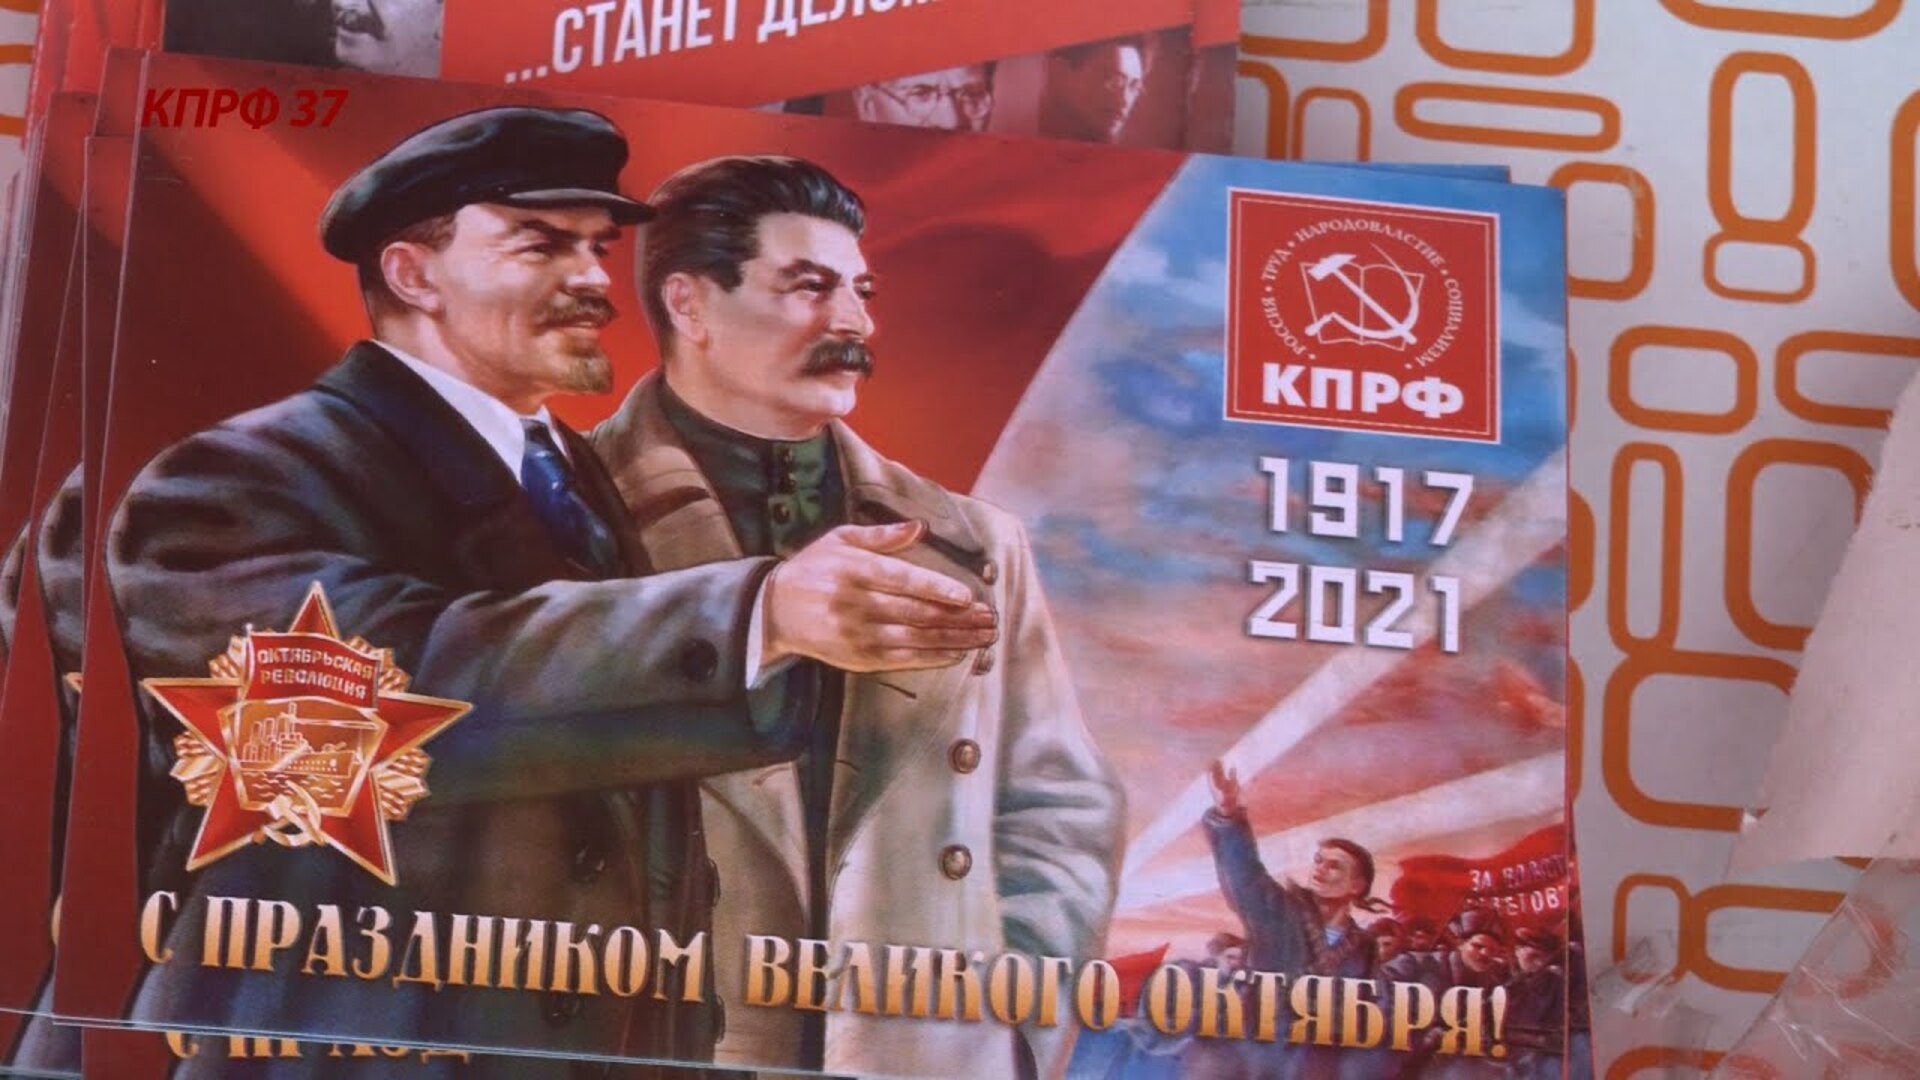 104 Года Великой Октябрьской социалистической революции